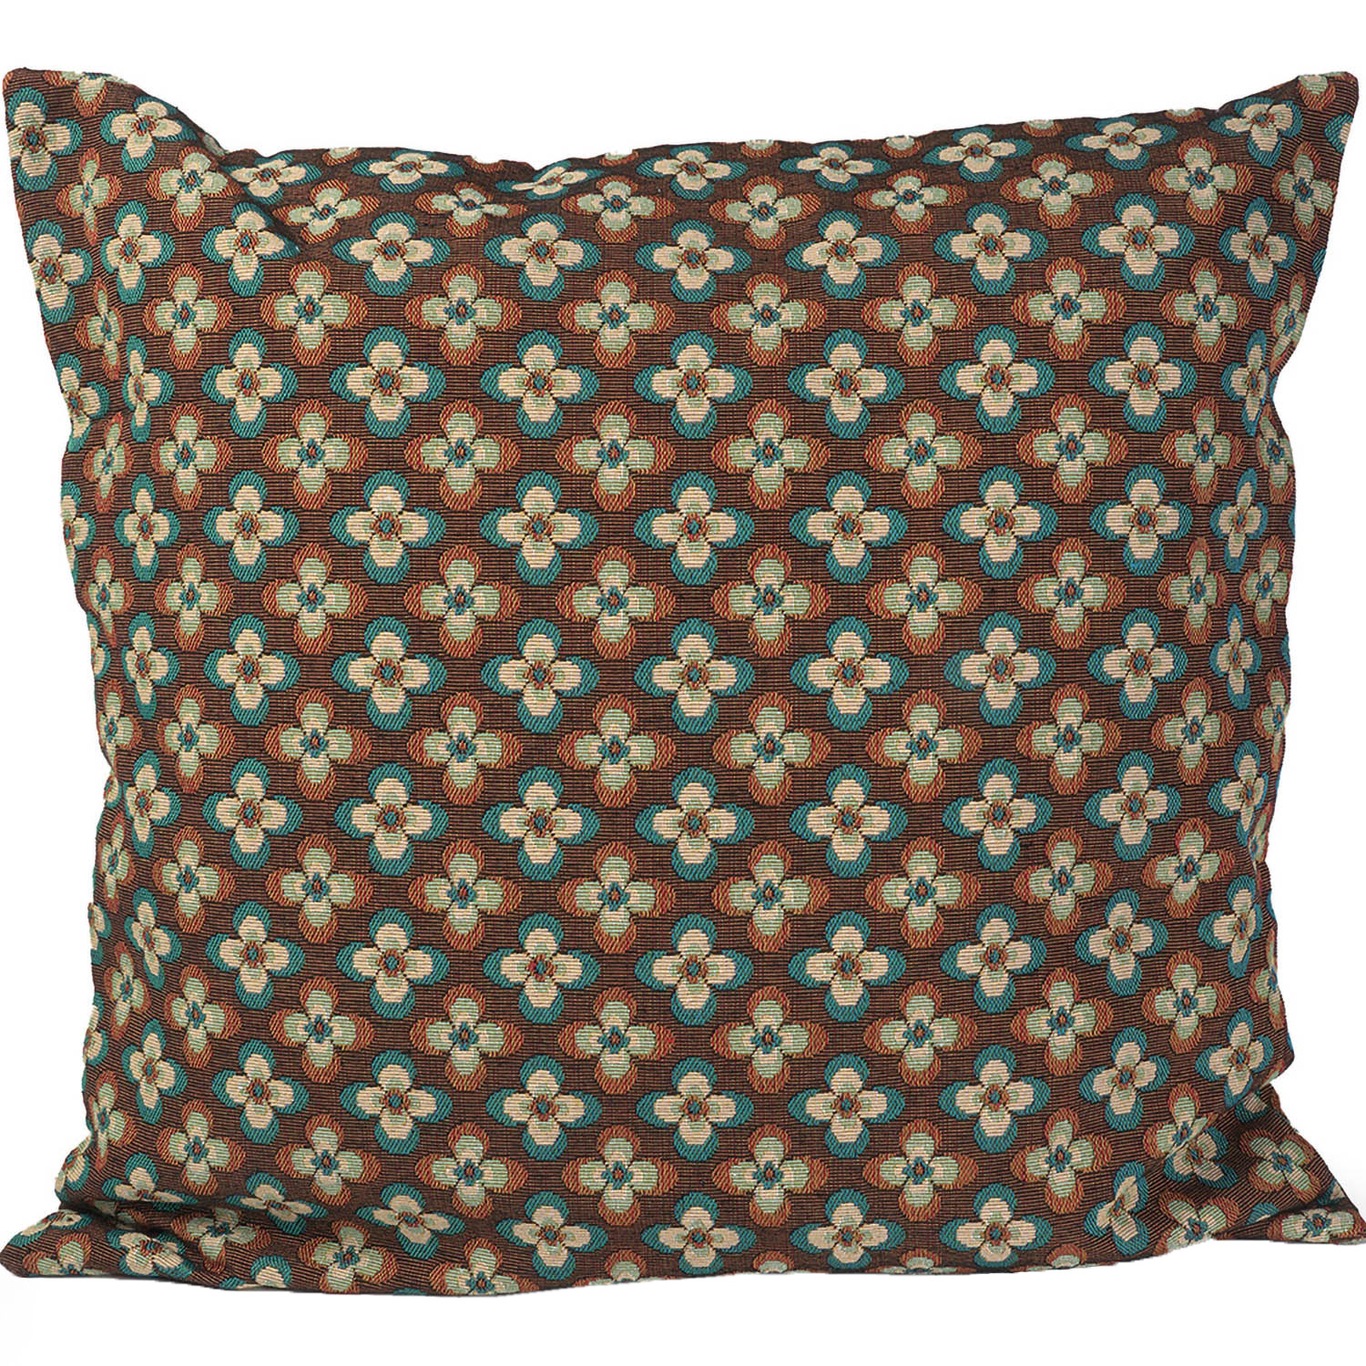 Clover Cushion Cover 50x50 cm, Brown